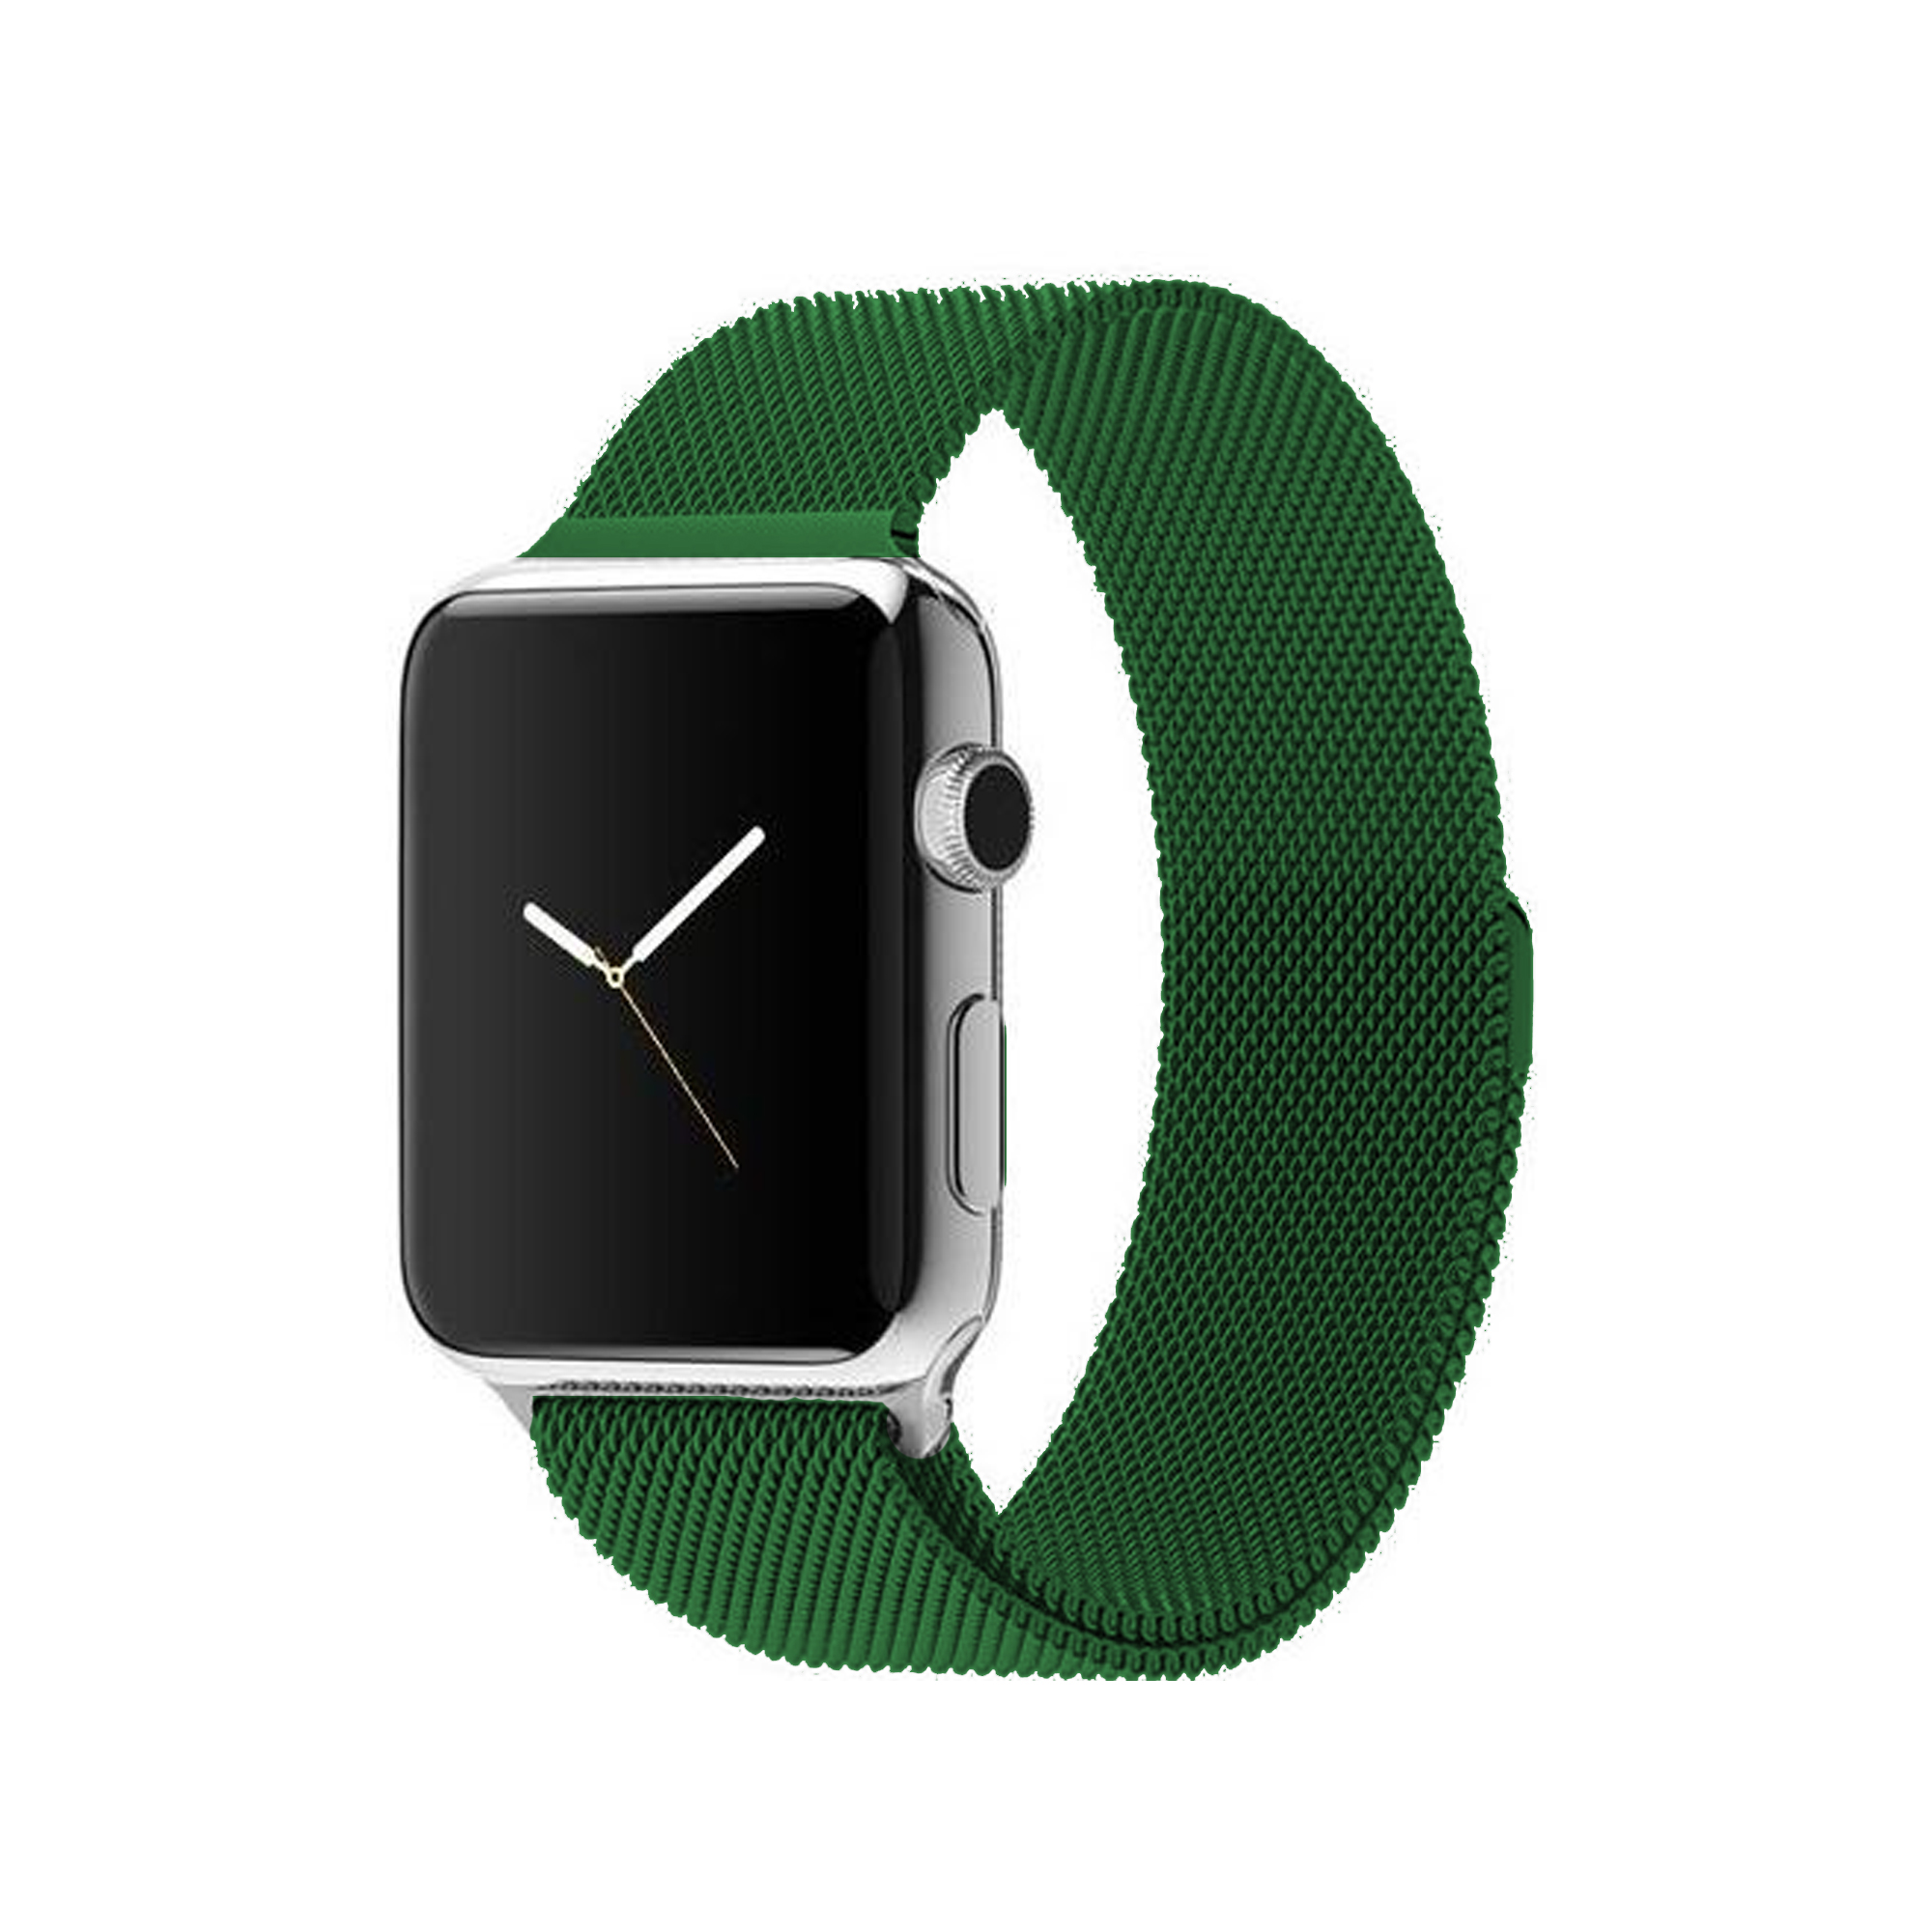 Ремешок из нержавеющей стали COTEetCL W6 Magnet Band для Apple Watch 42/44mm зеленый миланская петля (WH5202-GR)